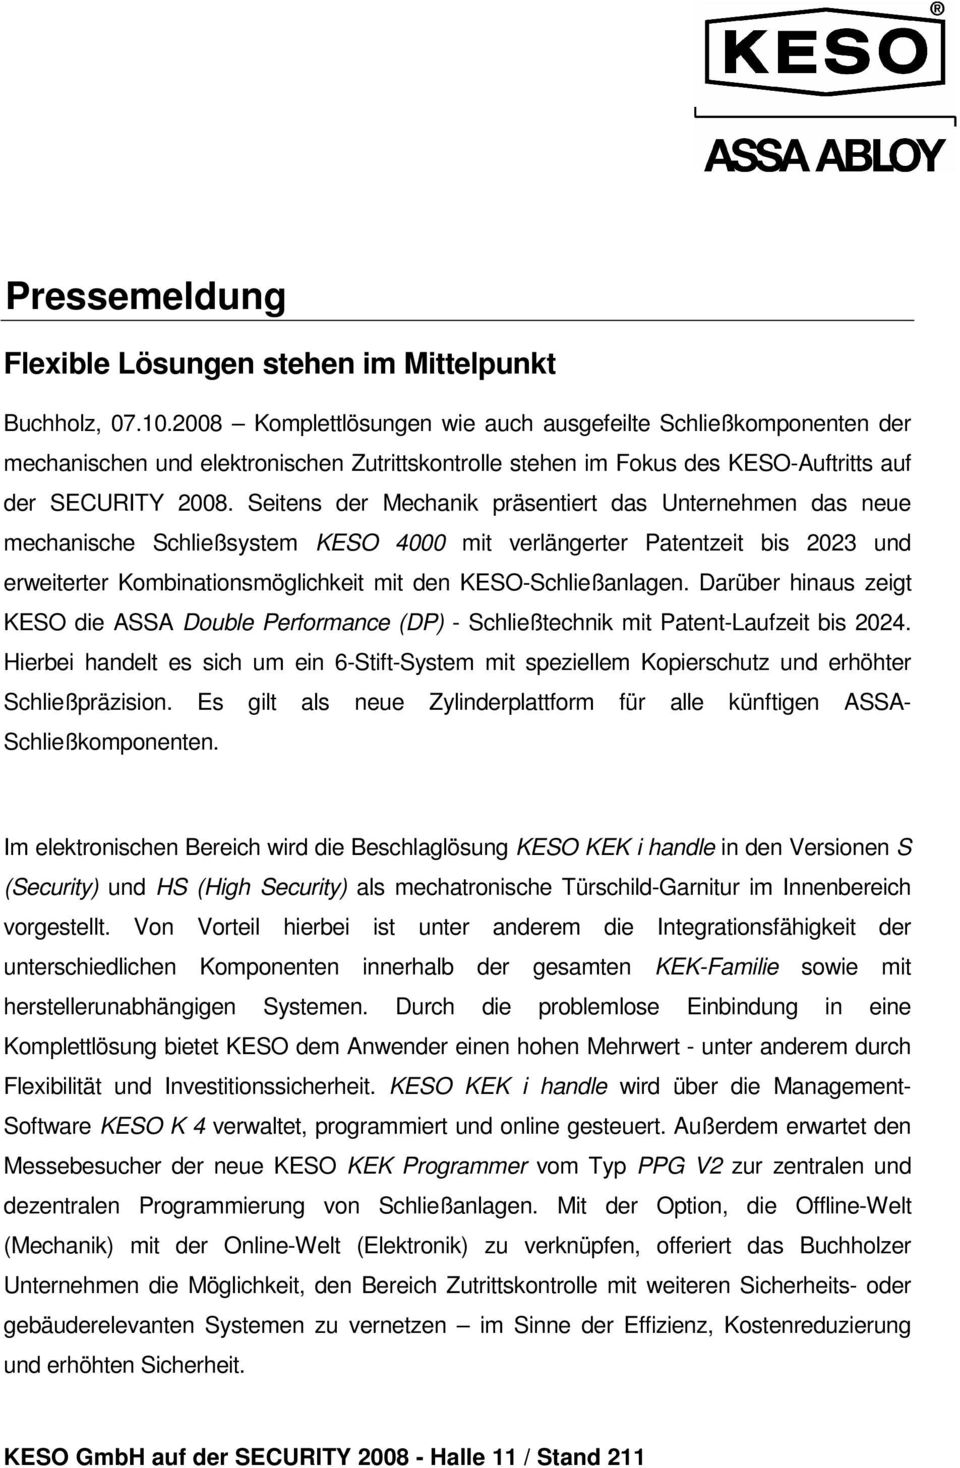 Seitens der Mechanik präsentiert das Unternehmen das neue mechanische Schließsystem KESO 4000 mit verlängerter Patentzeit bis 2023 und erweiterter Kombinationsmöglichkeit mit den KESO-Schließanlagen.